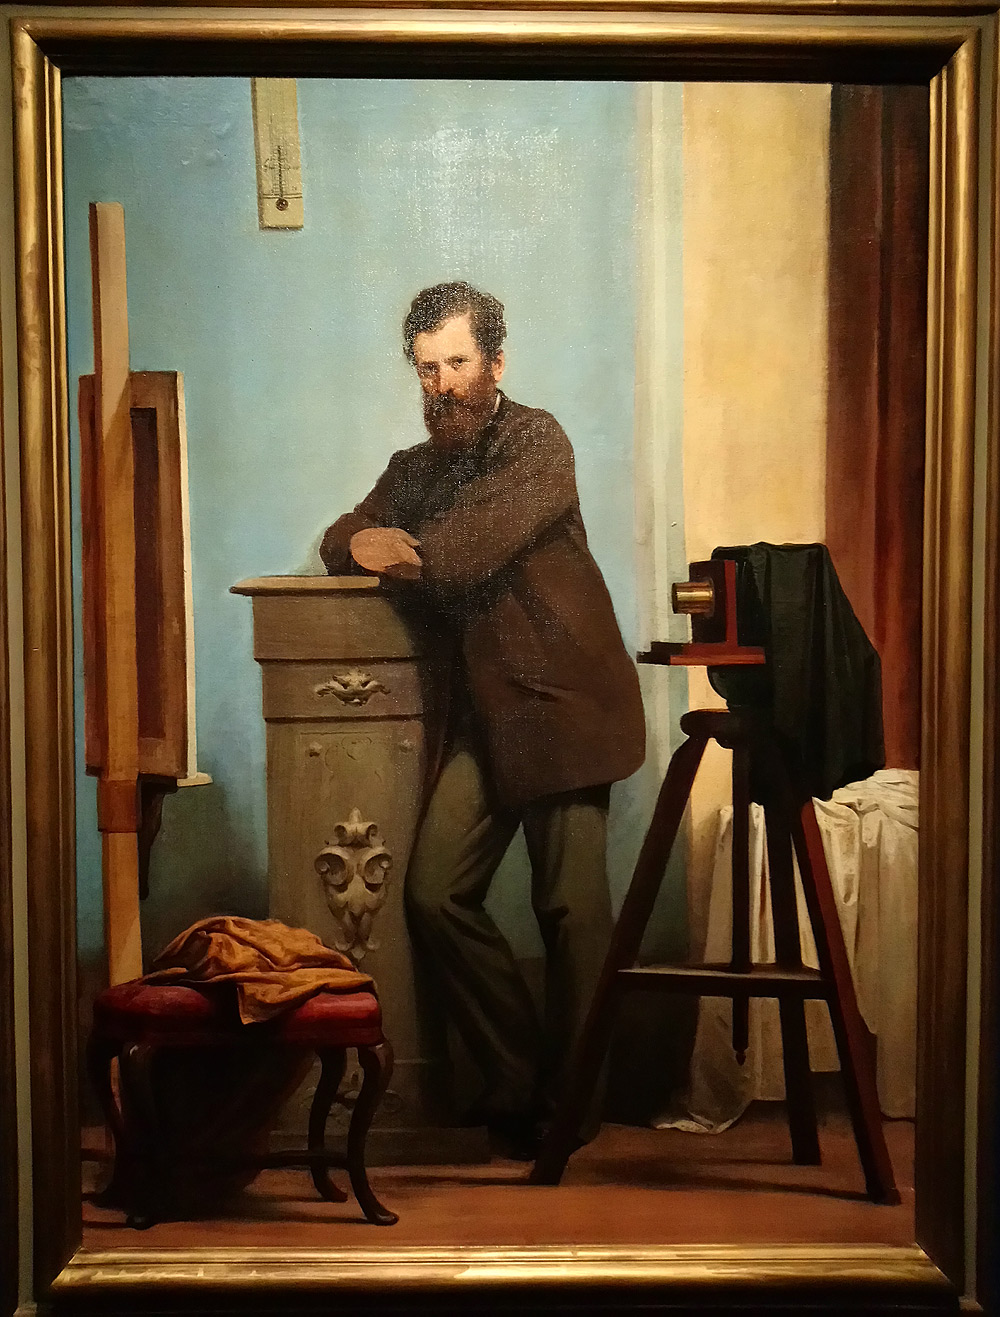 Alessandro Guardassoni, Autoritratto con macchina fotografica (1855-1860; olio su tela, 125 x 92 x 7,5 cm; Bologna, Fondazione Gualandi a Favore dei Sordi) 